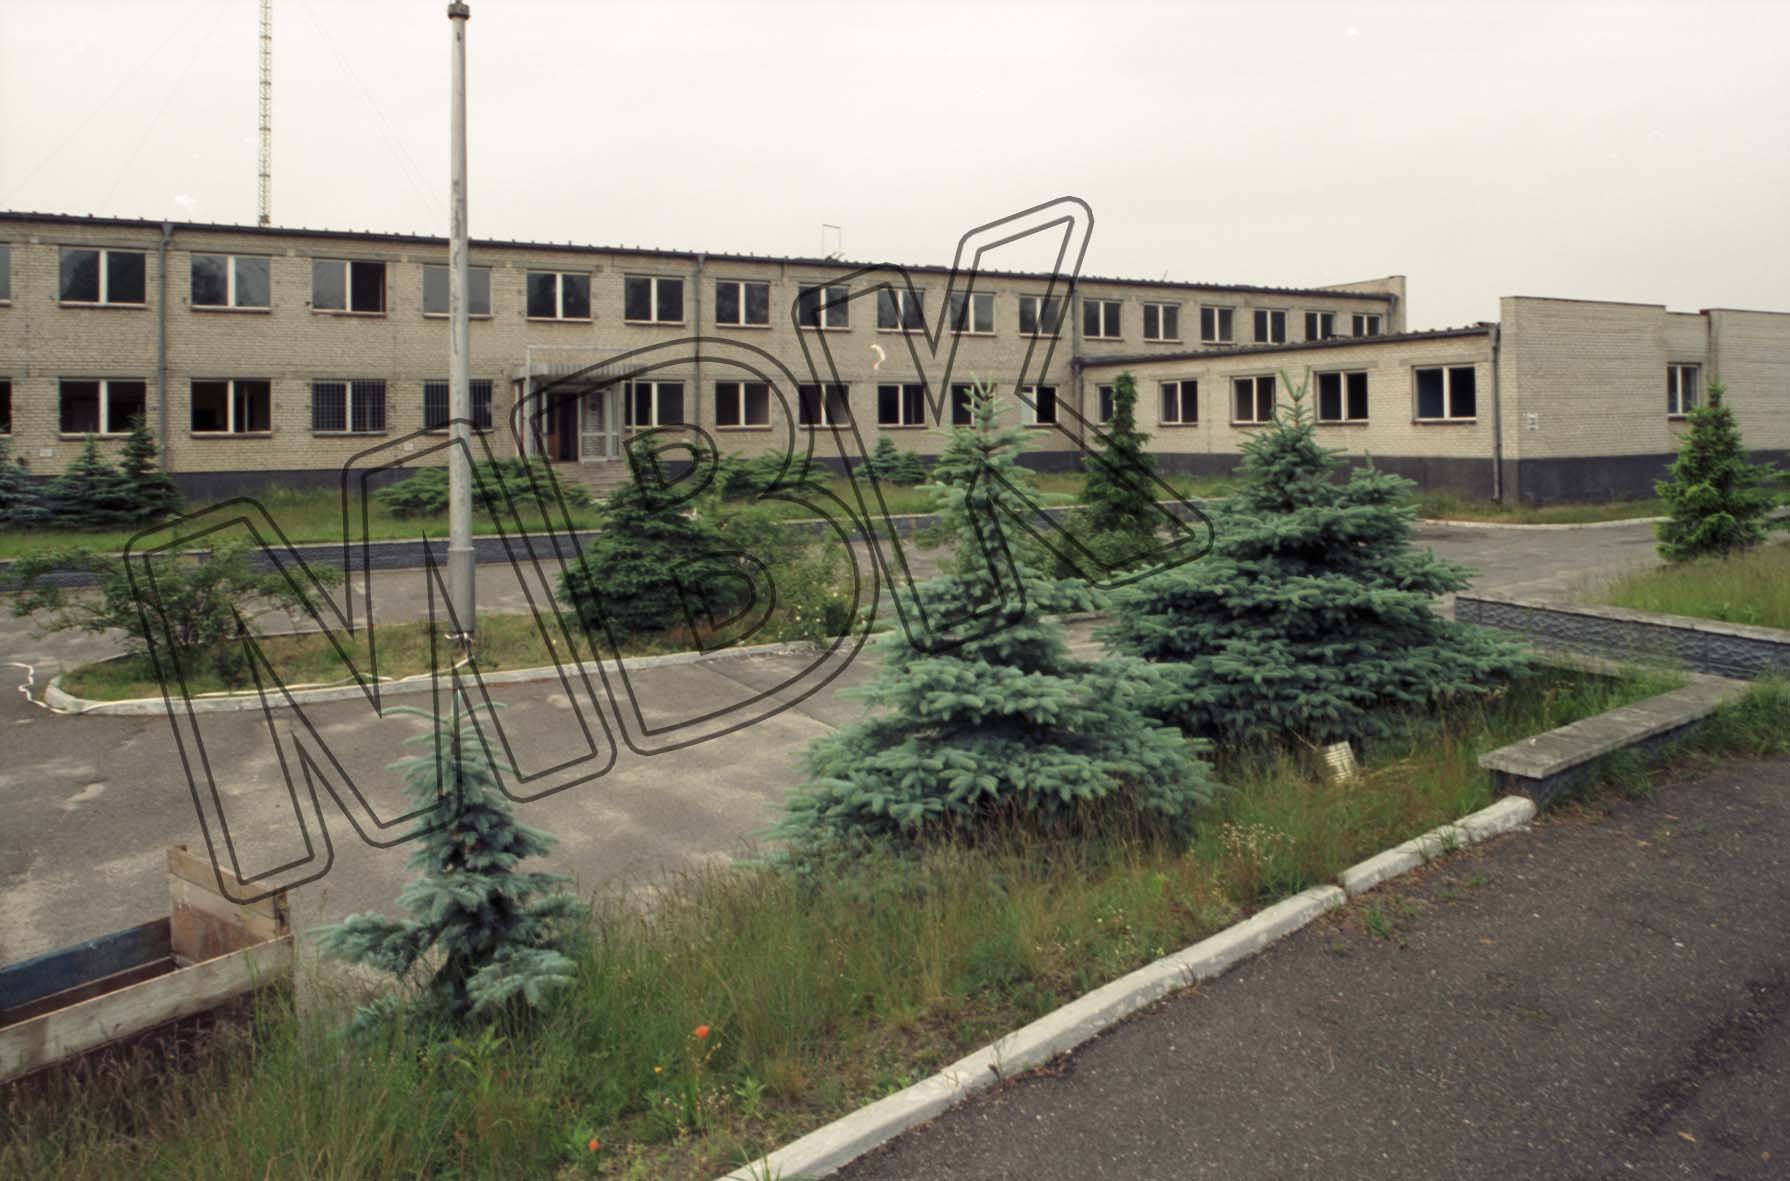 Fotografie: Rechenzentrum der WGT, 4. Gorodok (Militärsiedlung), Wünsdorf, vermutlich 1994 (Museum Berlin-Karlshorst RR-P)